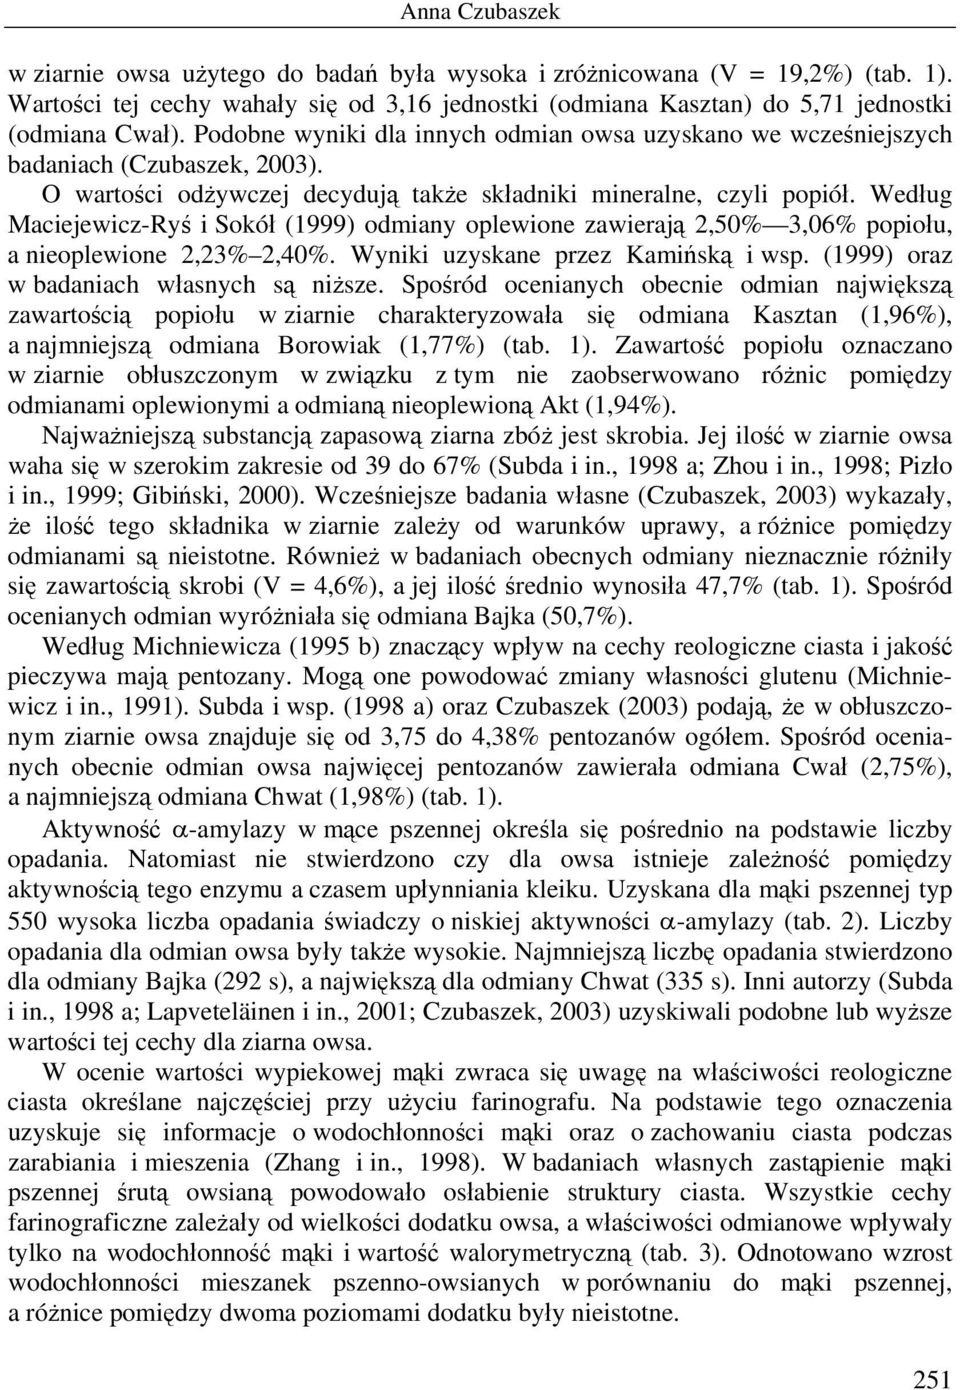 Według Maciejewicz-Ryś i Sokół (1999) odmiany oplewione zawierają 2,50% 3,06% popiołu, a nieoplewione 2,23% 2,40%. Wyniki uzyskane przez Kamińską i wsp. (1999) oraz w badaniach własnych są niższe.